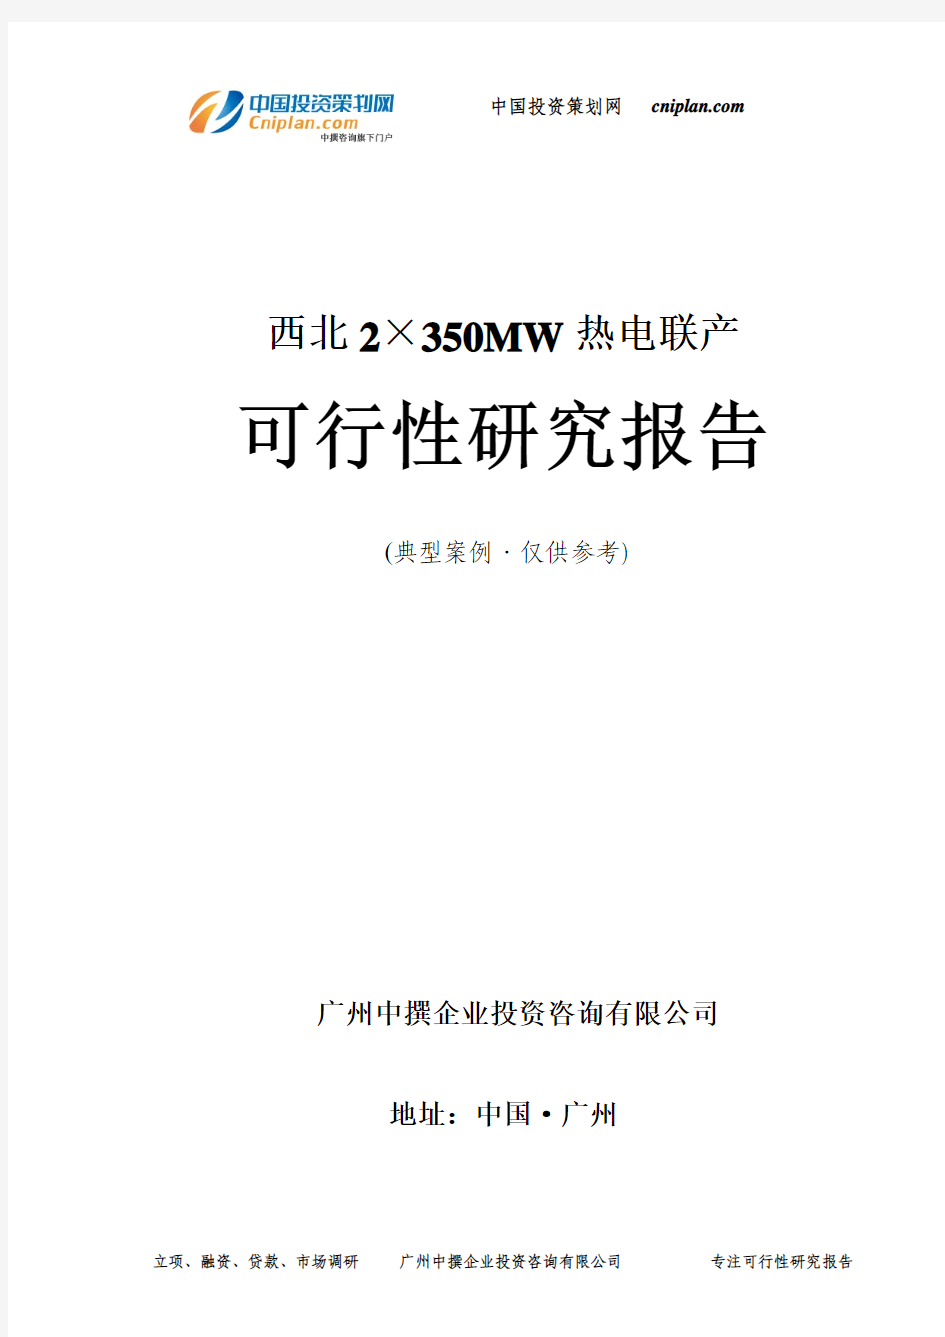 2×350MW热电联产可行性研究报告-广州中撰咨询